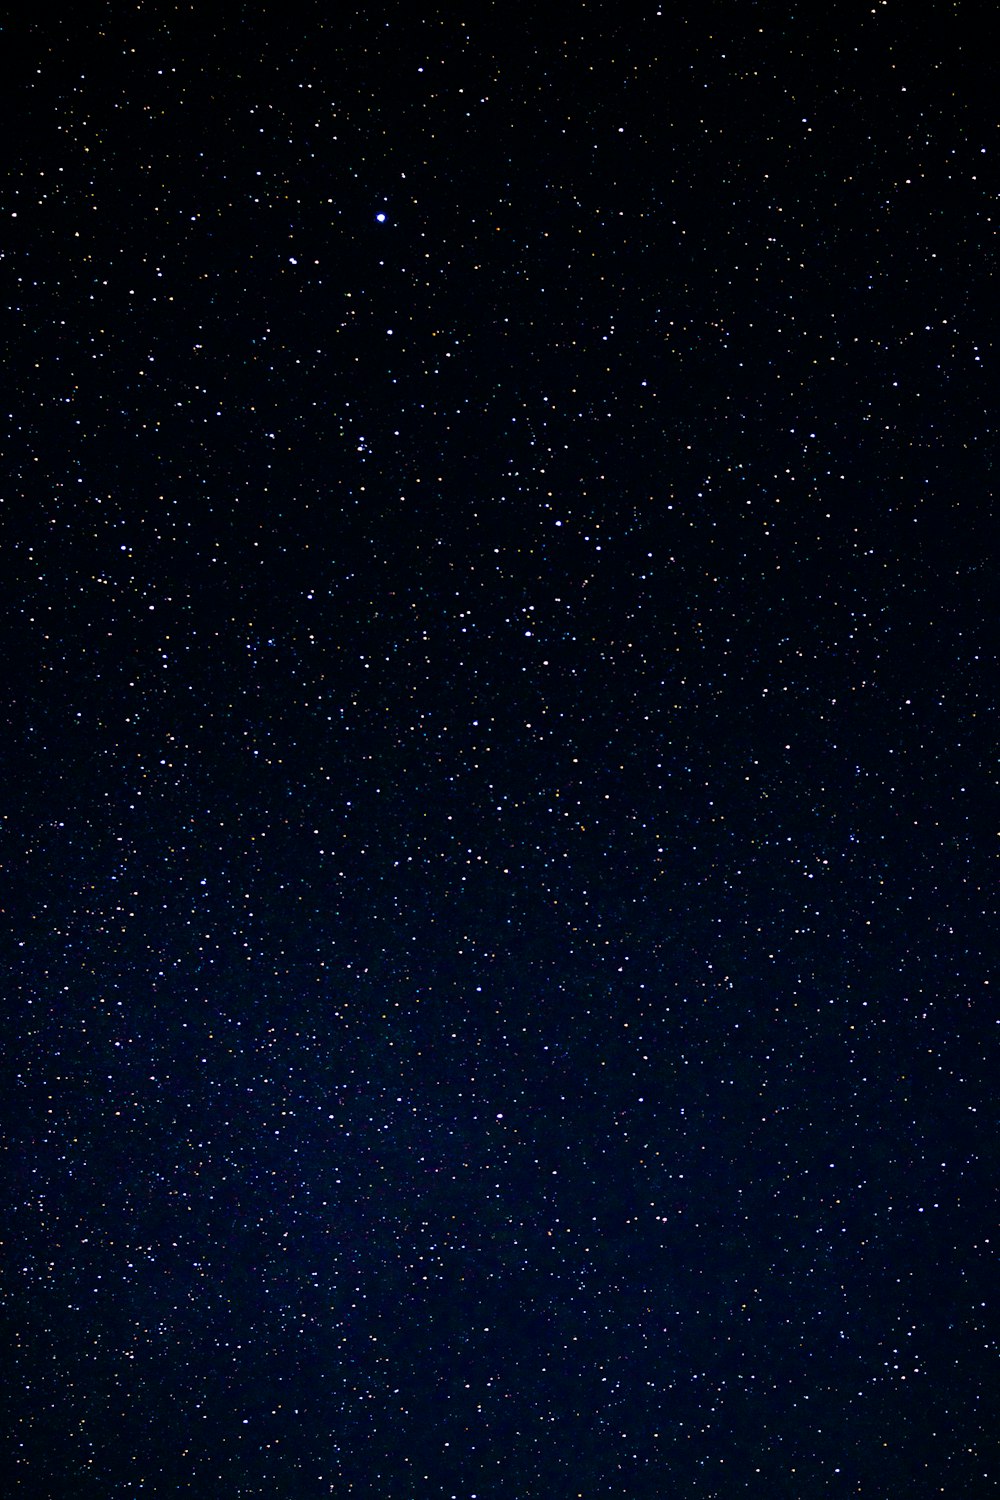 30k+ Fotos de estrellas en la noche | Descargar imágenes gratis en Unsplash